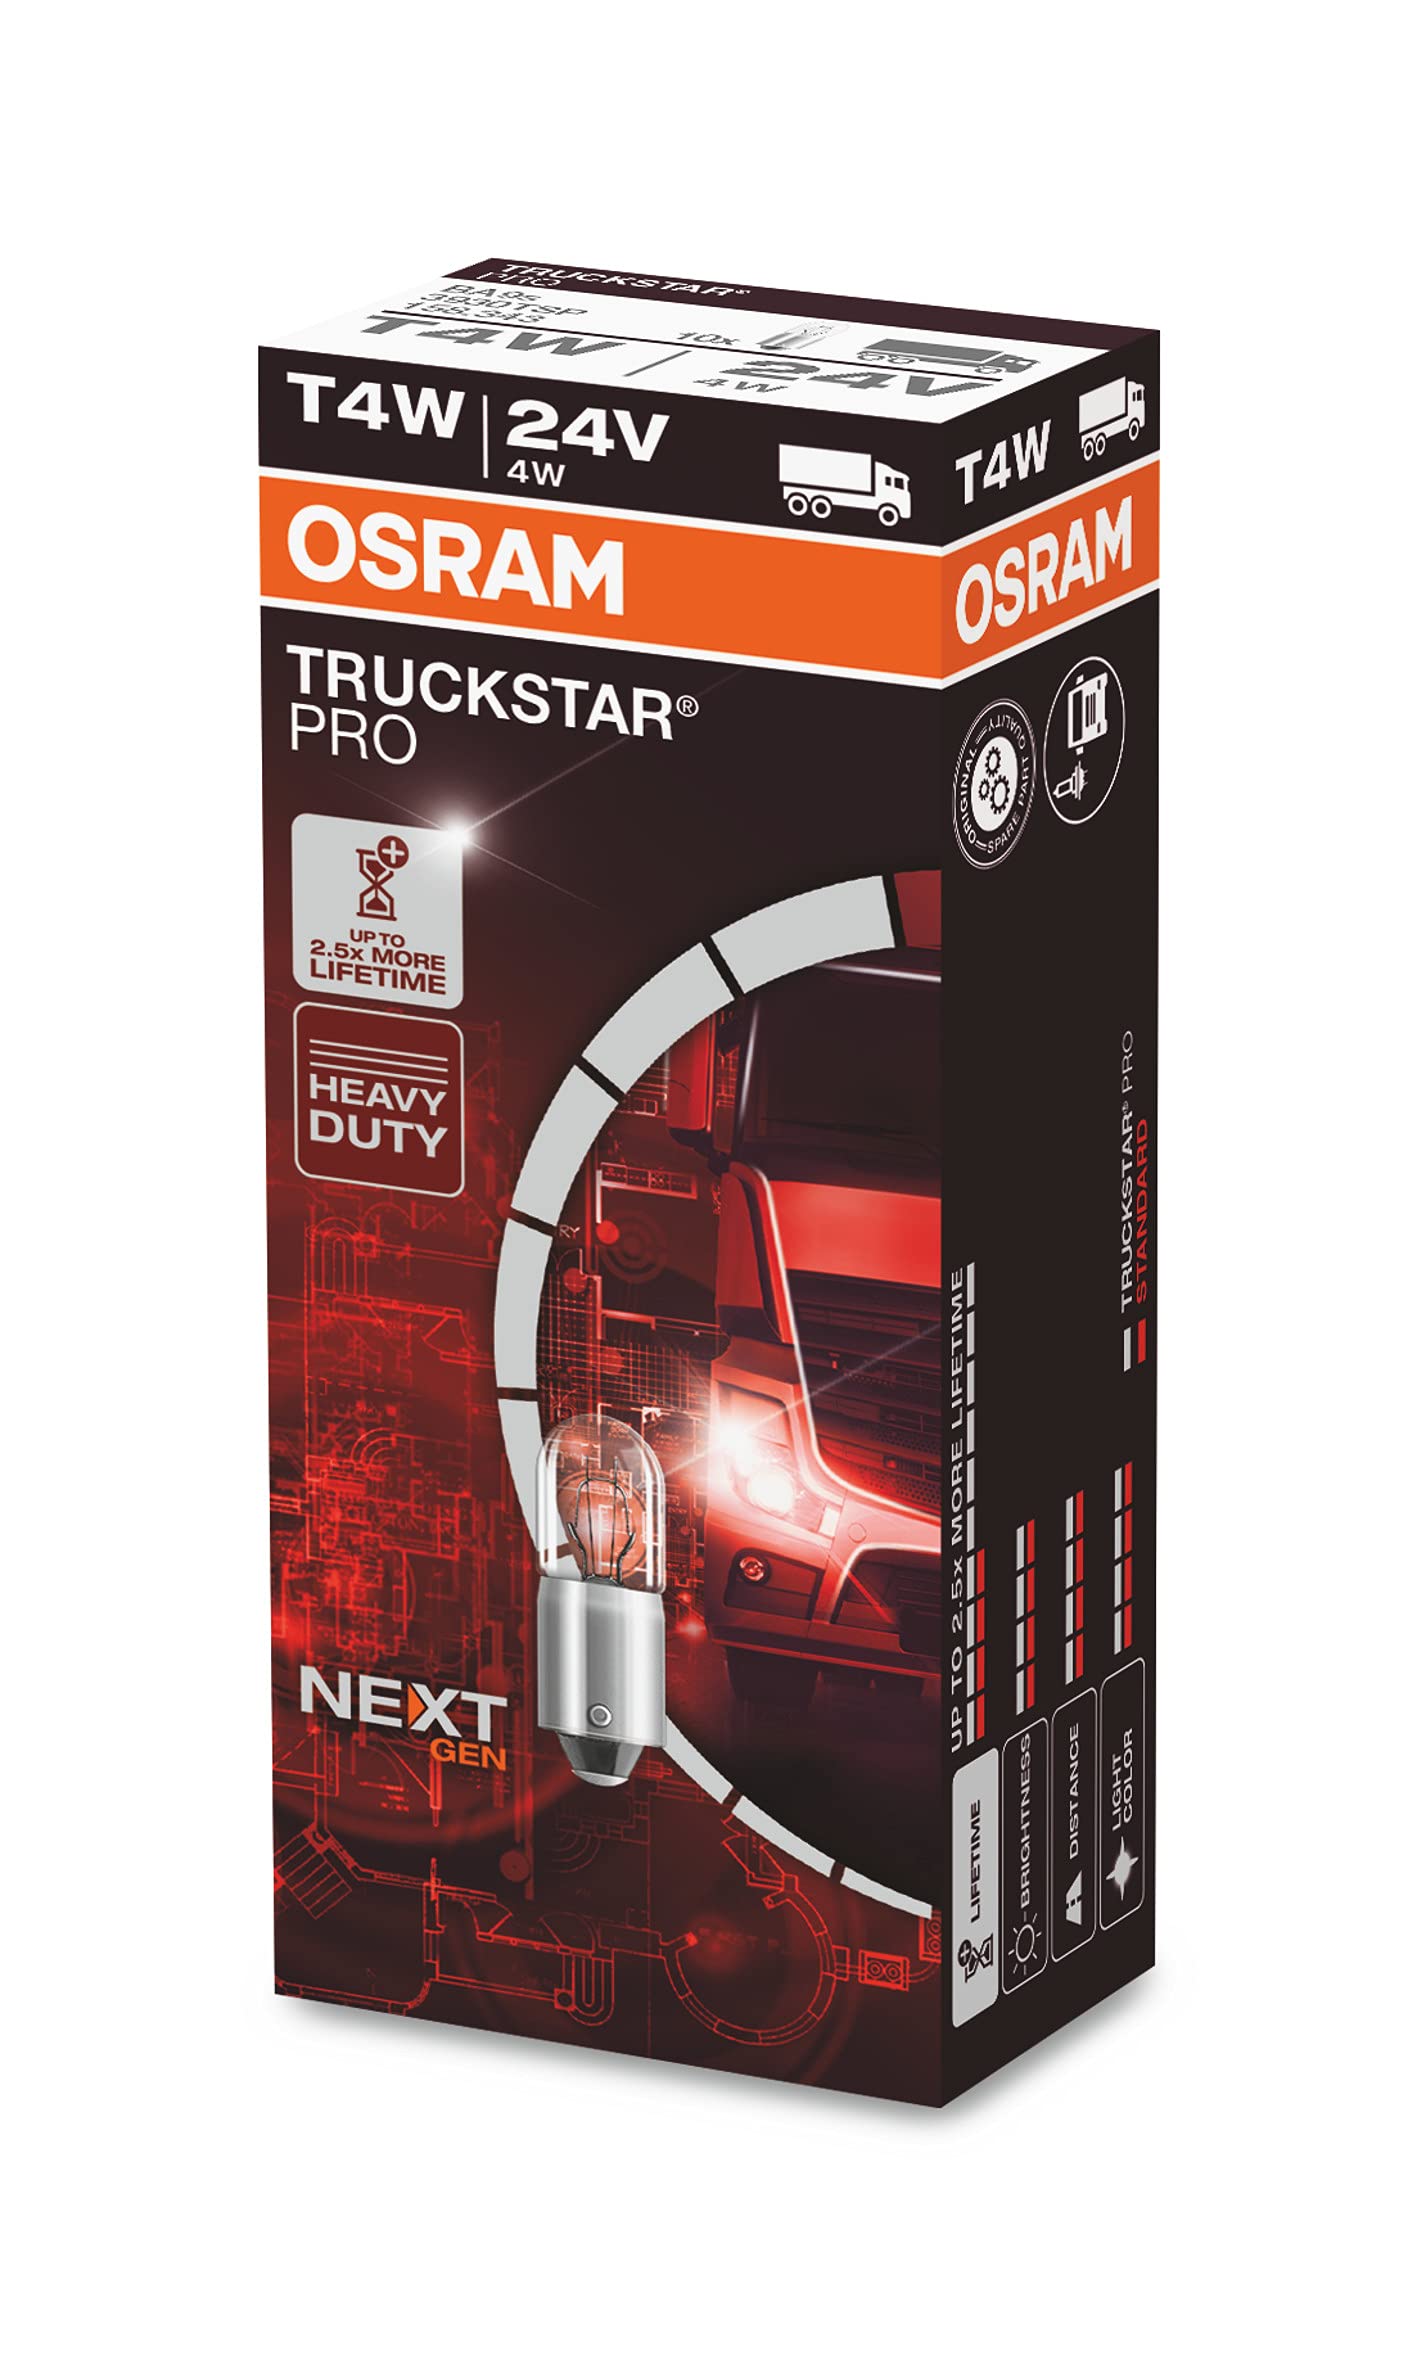 OSRAM TRUCKSTAR® PRO T4W, +120% mehr Helligkeit, Halogen-Signallampe, 3930TSP, 24V LKW Lampe, Faltschachtel (10 Lampen) von Osram